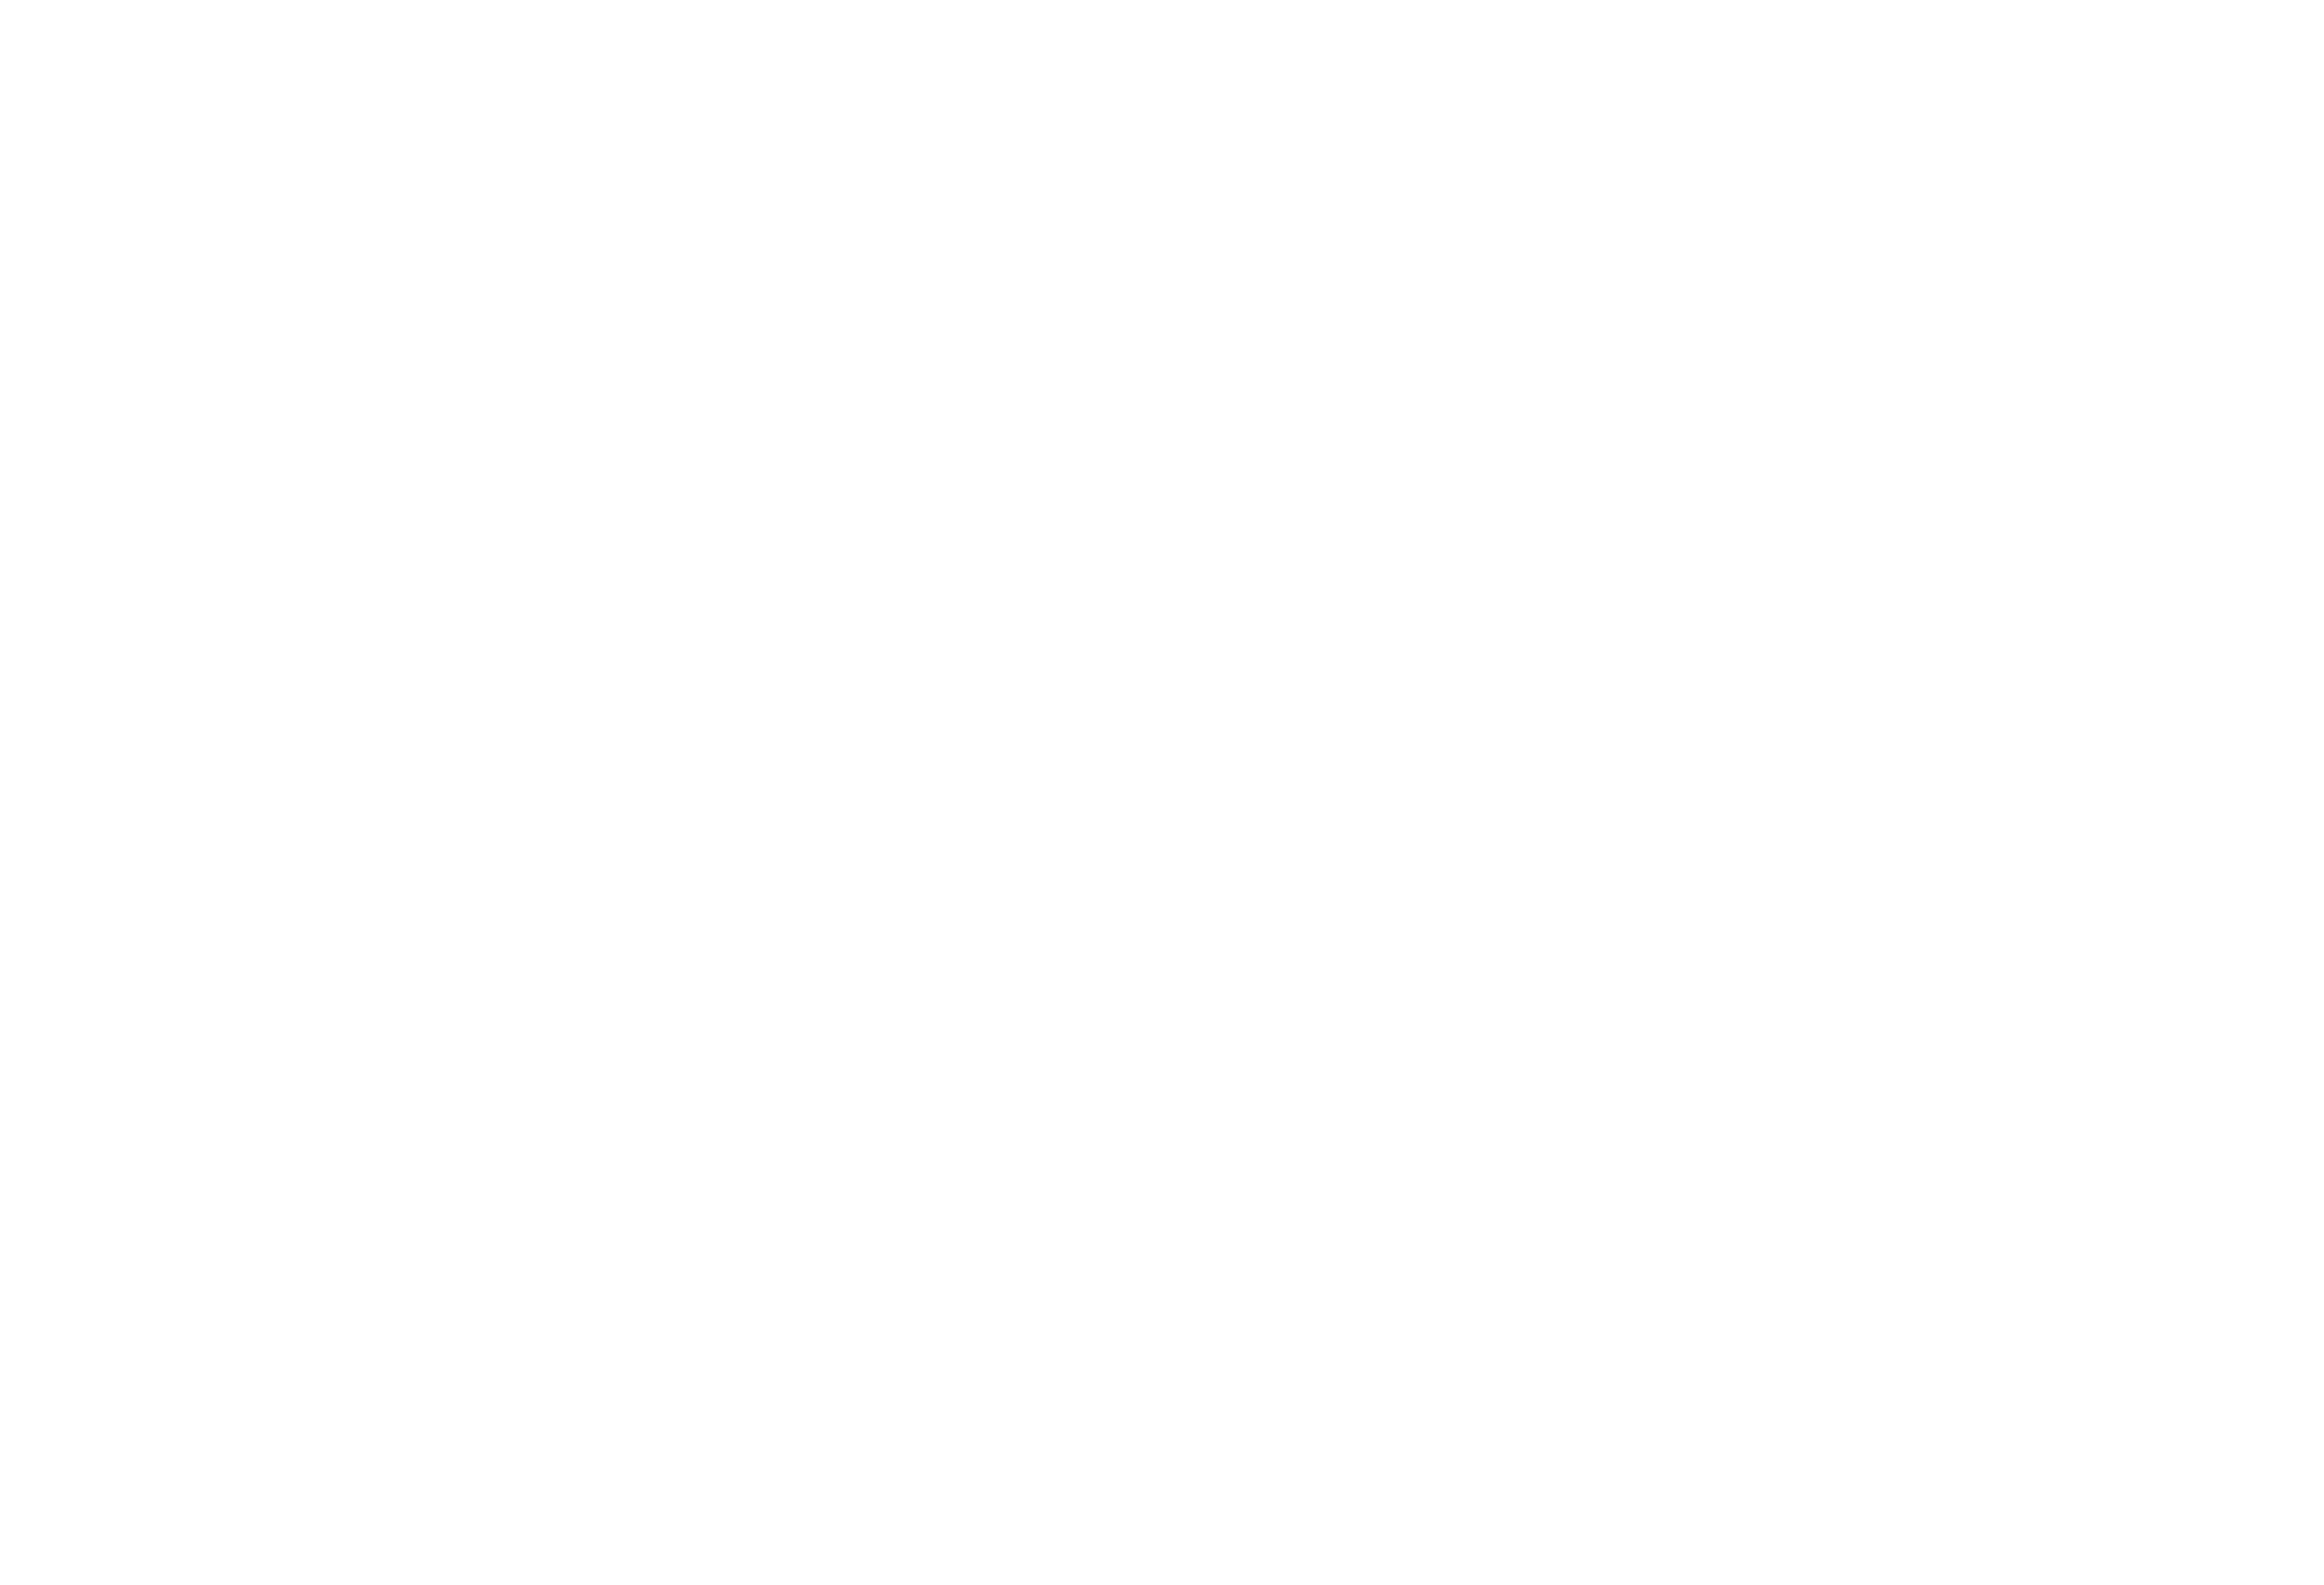 INTIMIDAD: Estreno en Netflix de nueva serie española original, MUY ATRACTIVA, con un elenco POTENTE encabezado por Itziar Ituño (La casa de papel), Emma Suárez (Julieta) y Verónica Echegui (Fortitude)